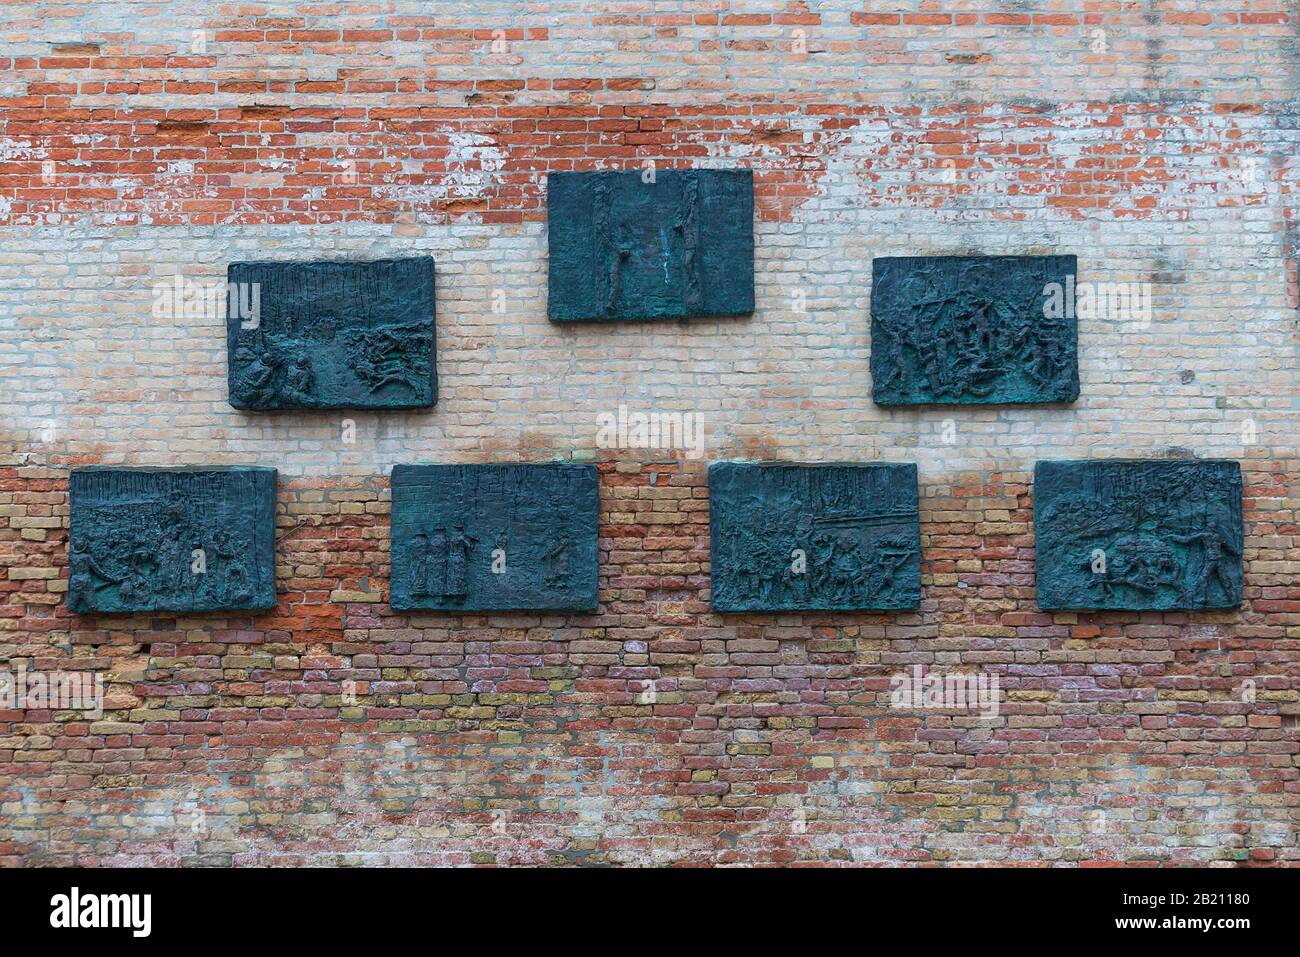 Memorial plaques to Venice victims of the Holocaust by Arbit Blatas, 1908-1999, Campo del Ghetto Nuovo, Venice, Veneto, Italy Stock Photo